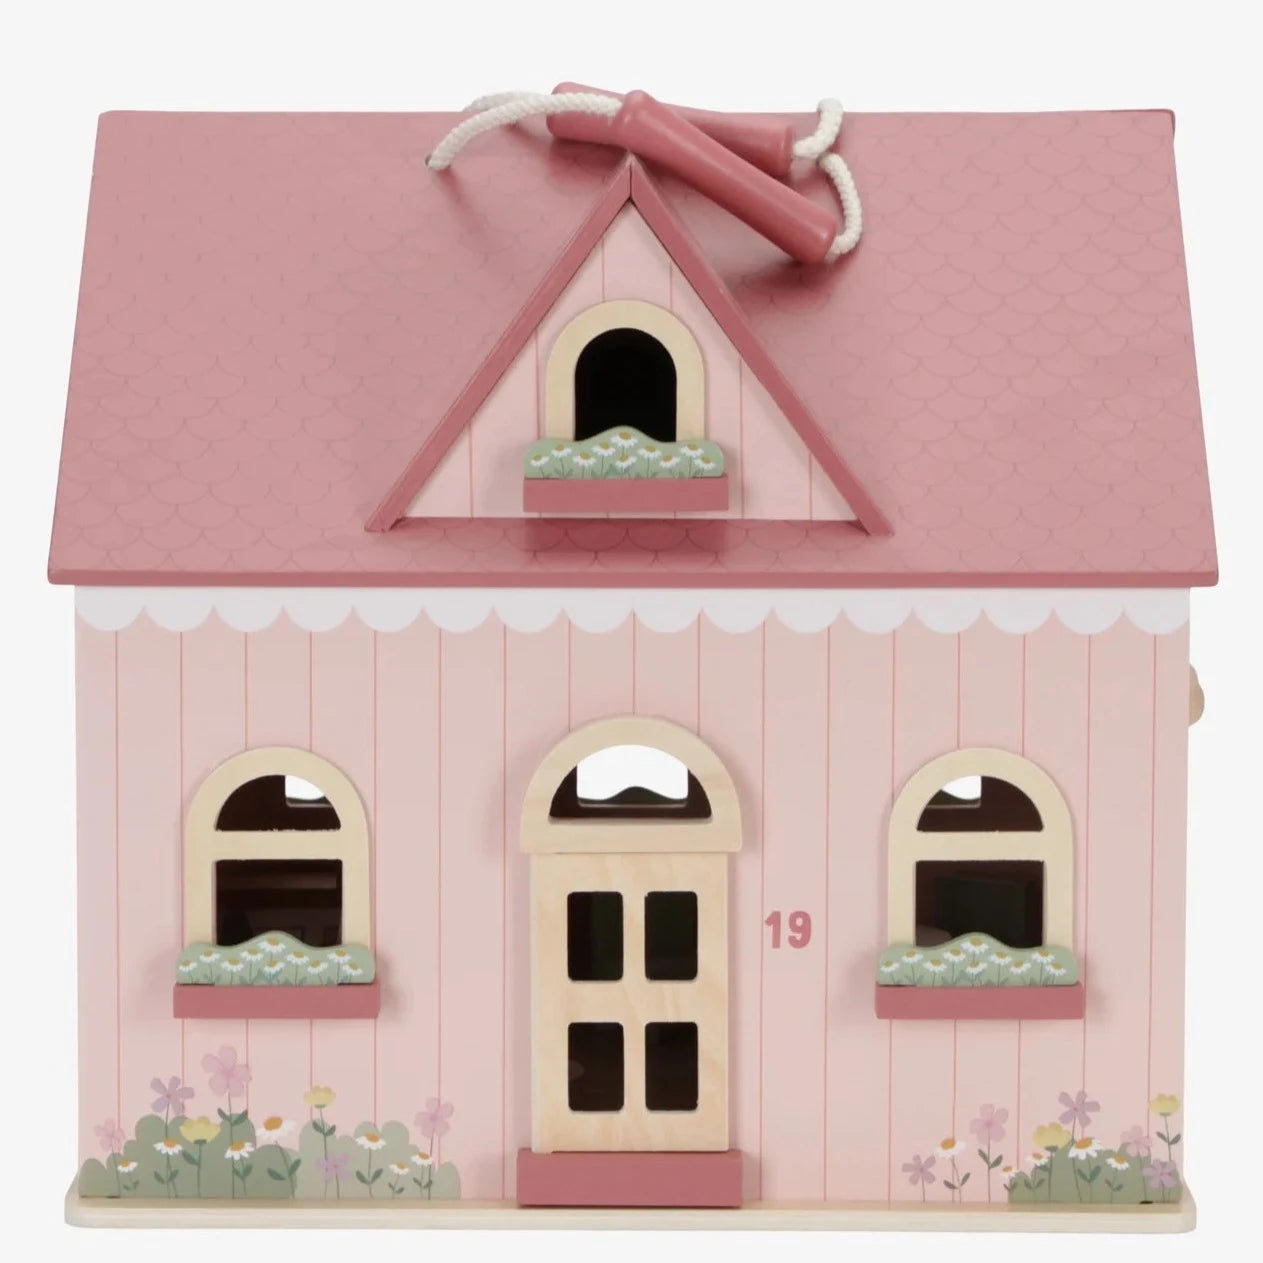 Little Dutch: przenośny domek dla lalek Small Doll's House